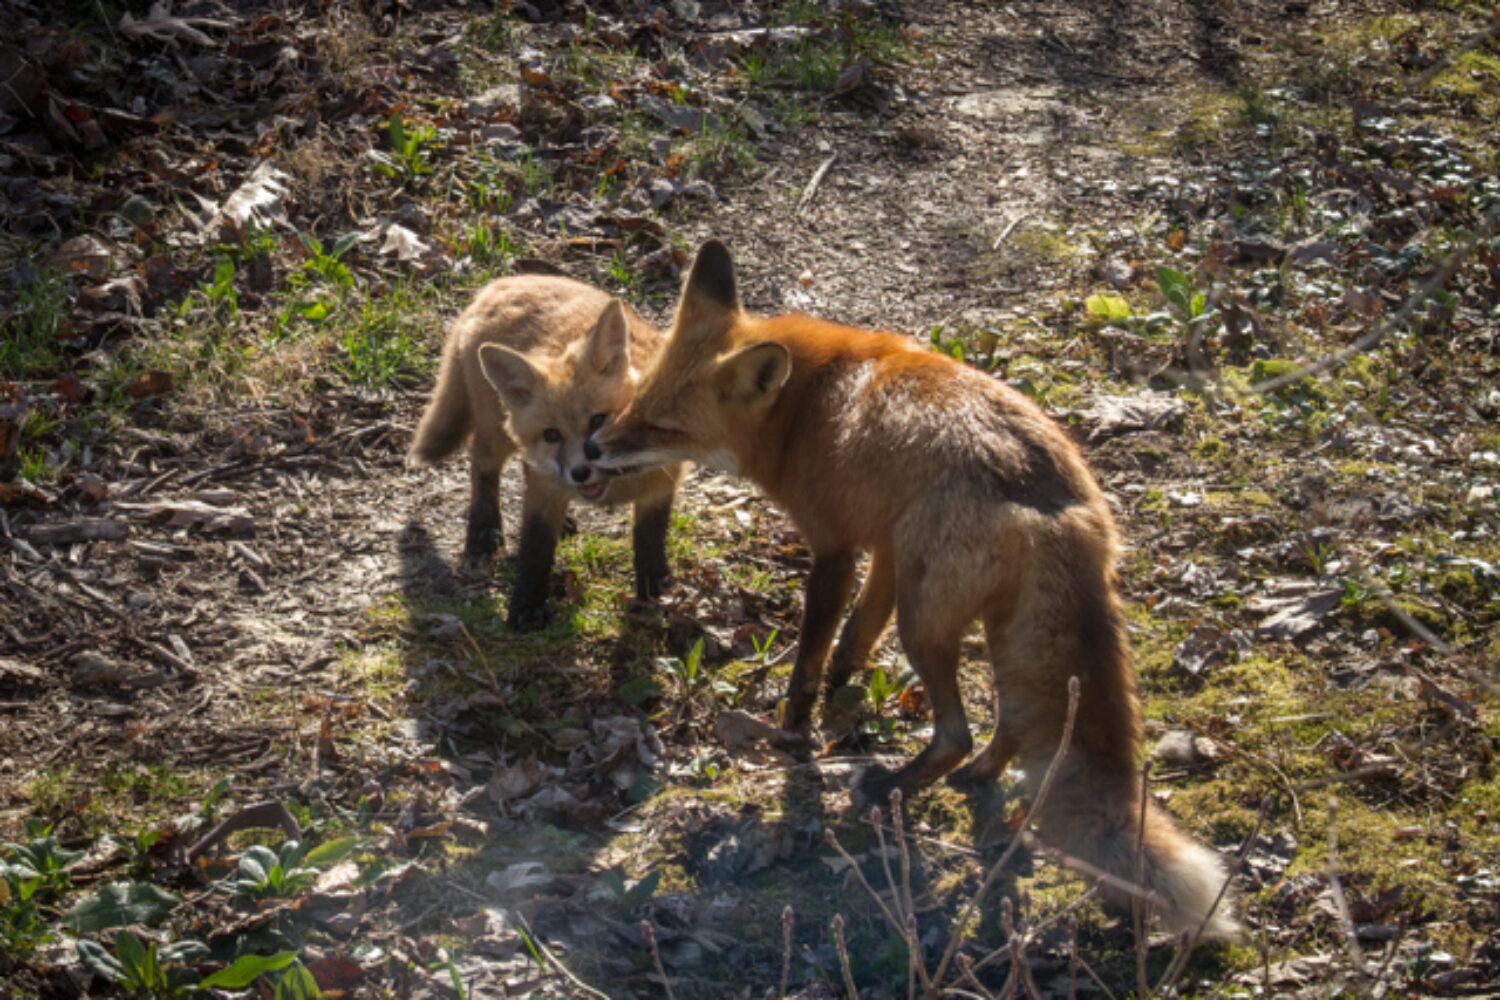 Foxy photos